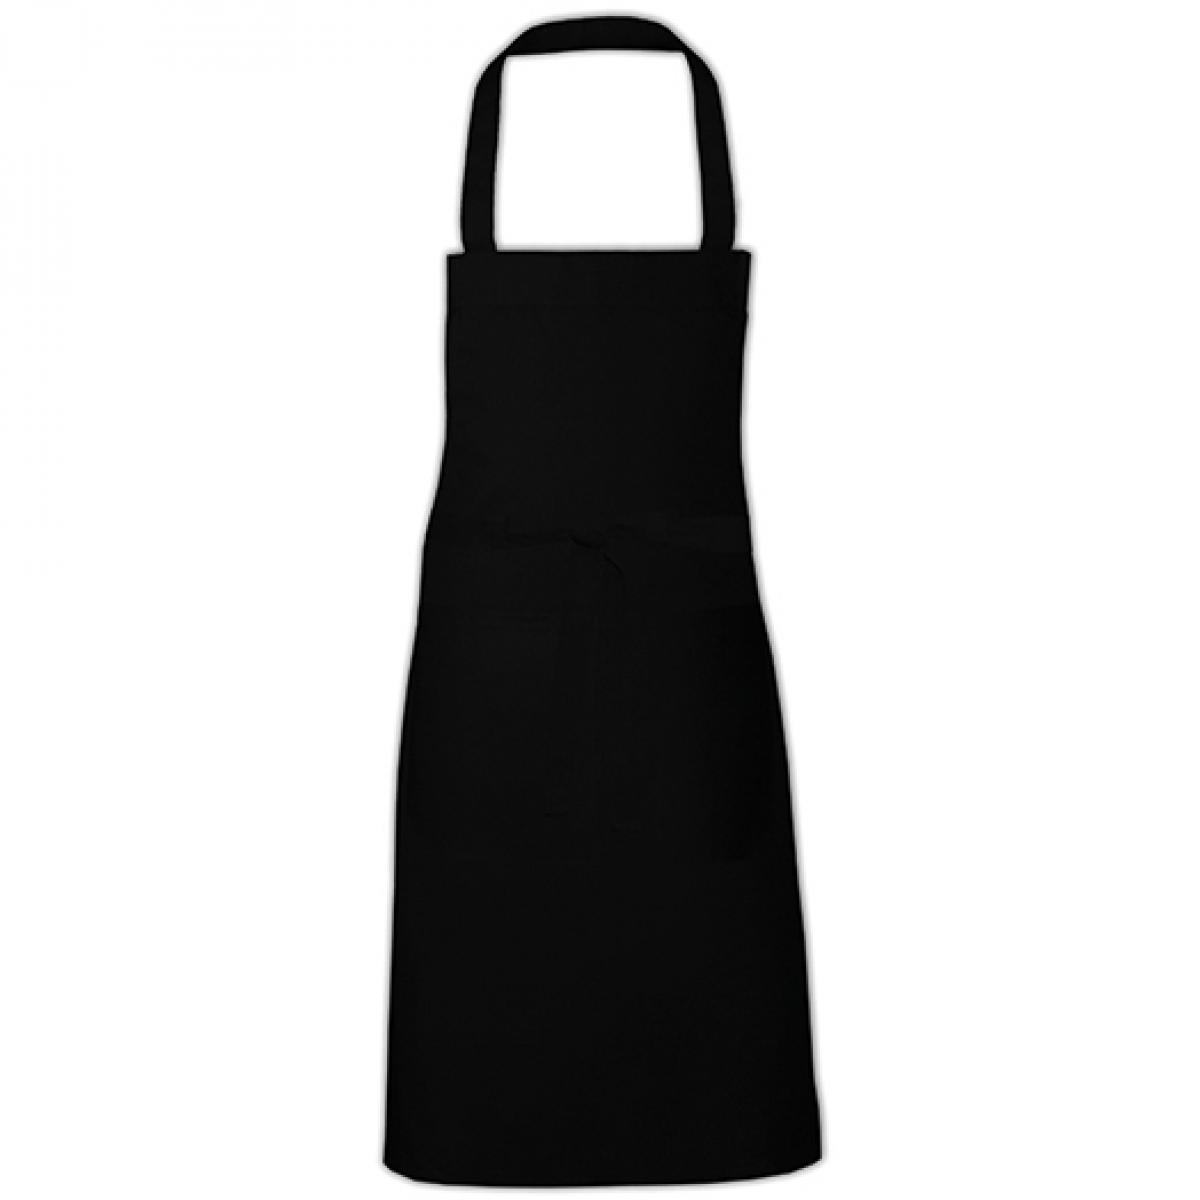 Hersteller: Link Kitchen Wear Herstellernummer: HS8073 Artikelbezeichnung: Hobby Apron - 73 x 80 cm - Waschbar bis 60 °C Farbe: Black